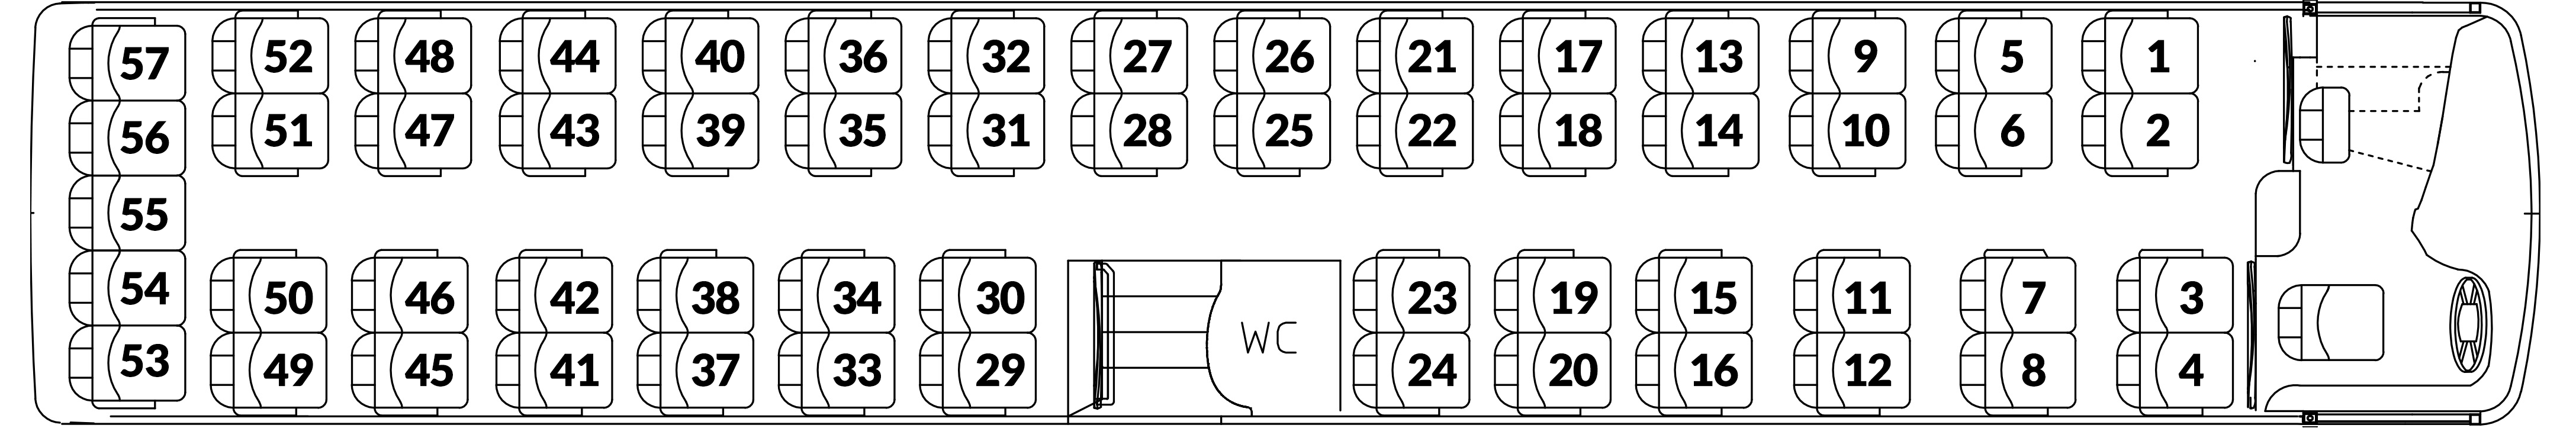 seatingplan